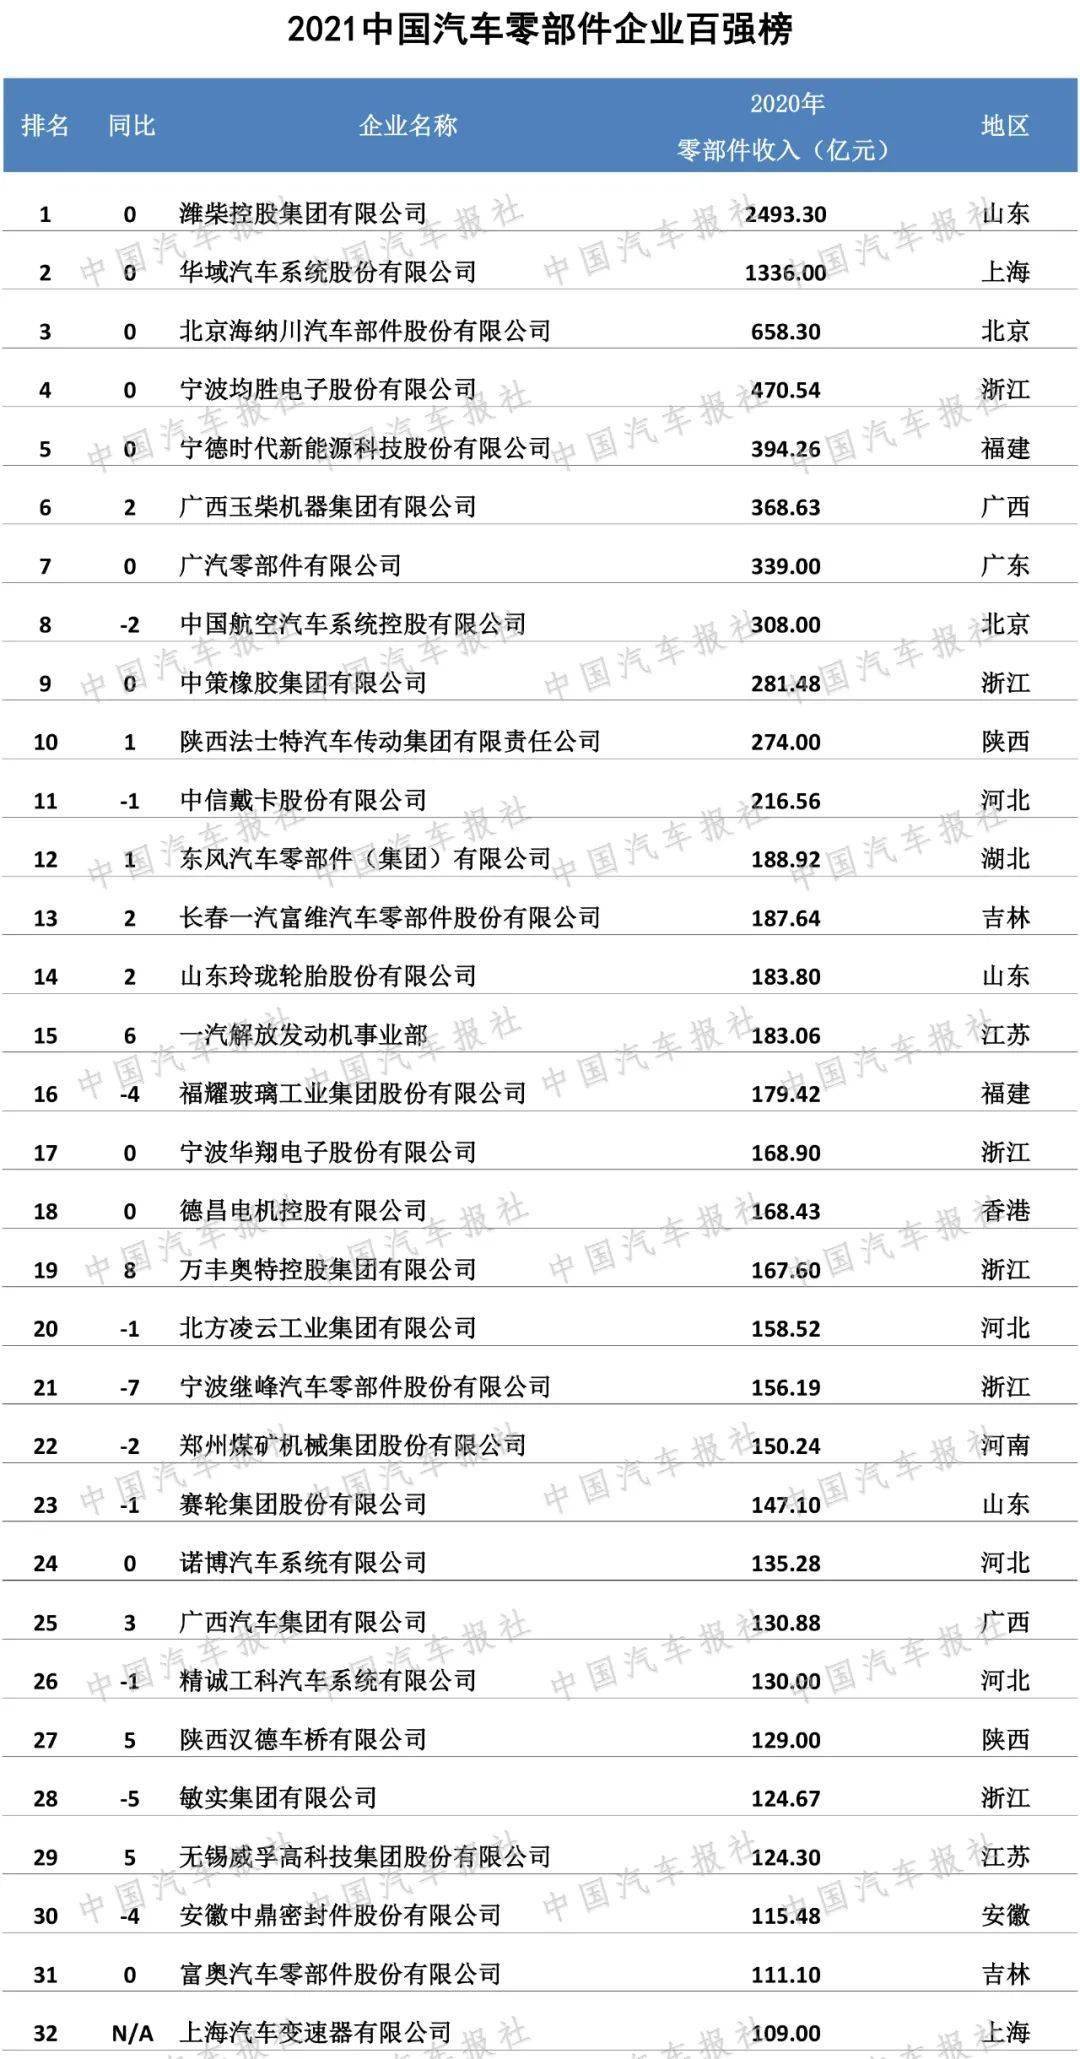 山东企业排行榜_山东13家企业入围中国汽车零部件TOP100,2家企业今年新上榜